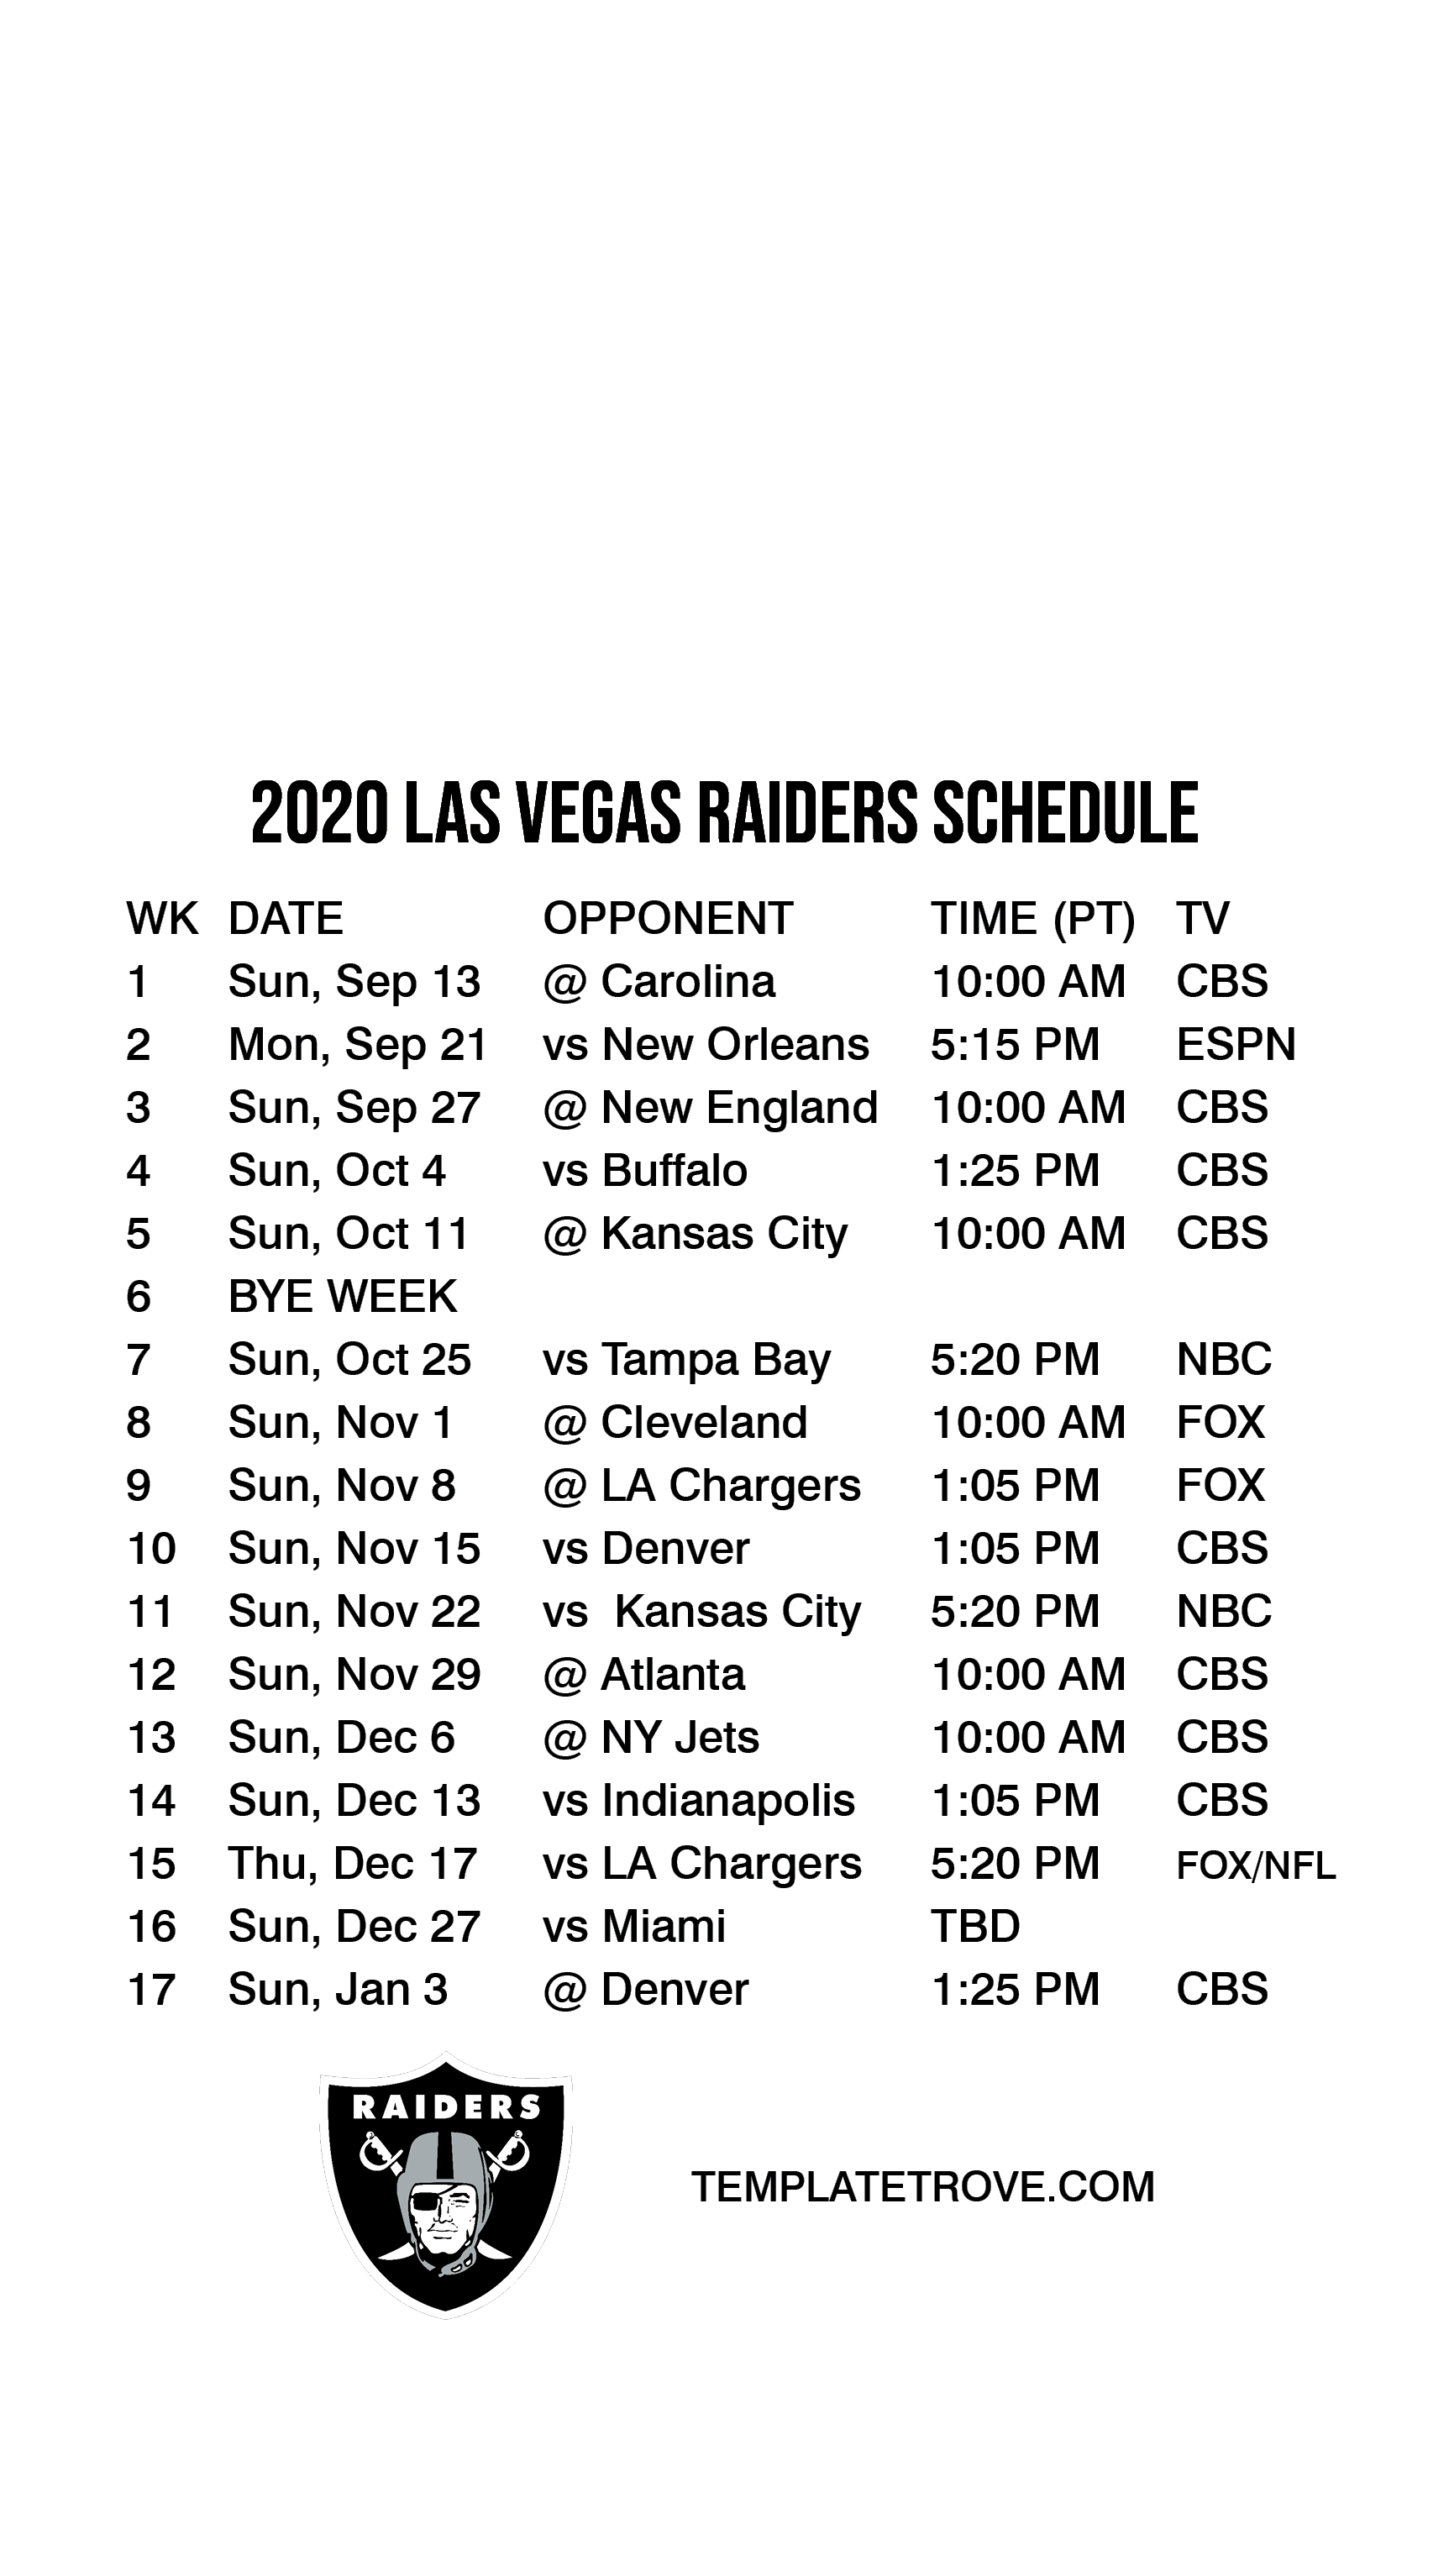 2021 - 2022 Las Vegas Raiders Schedule